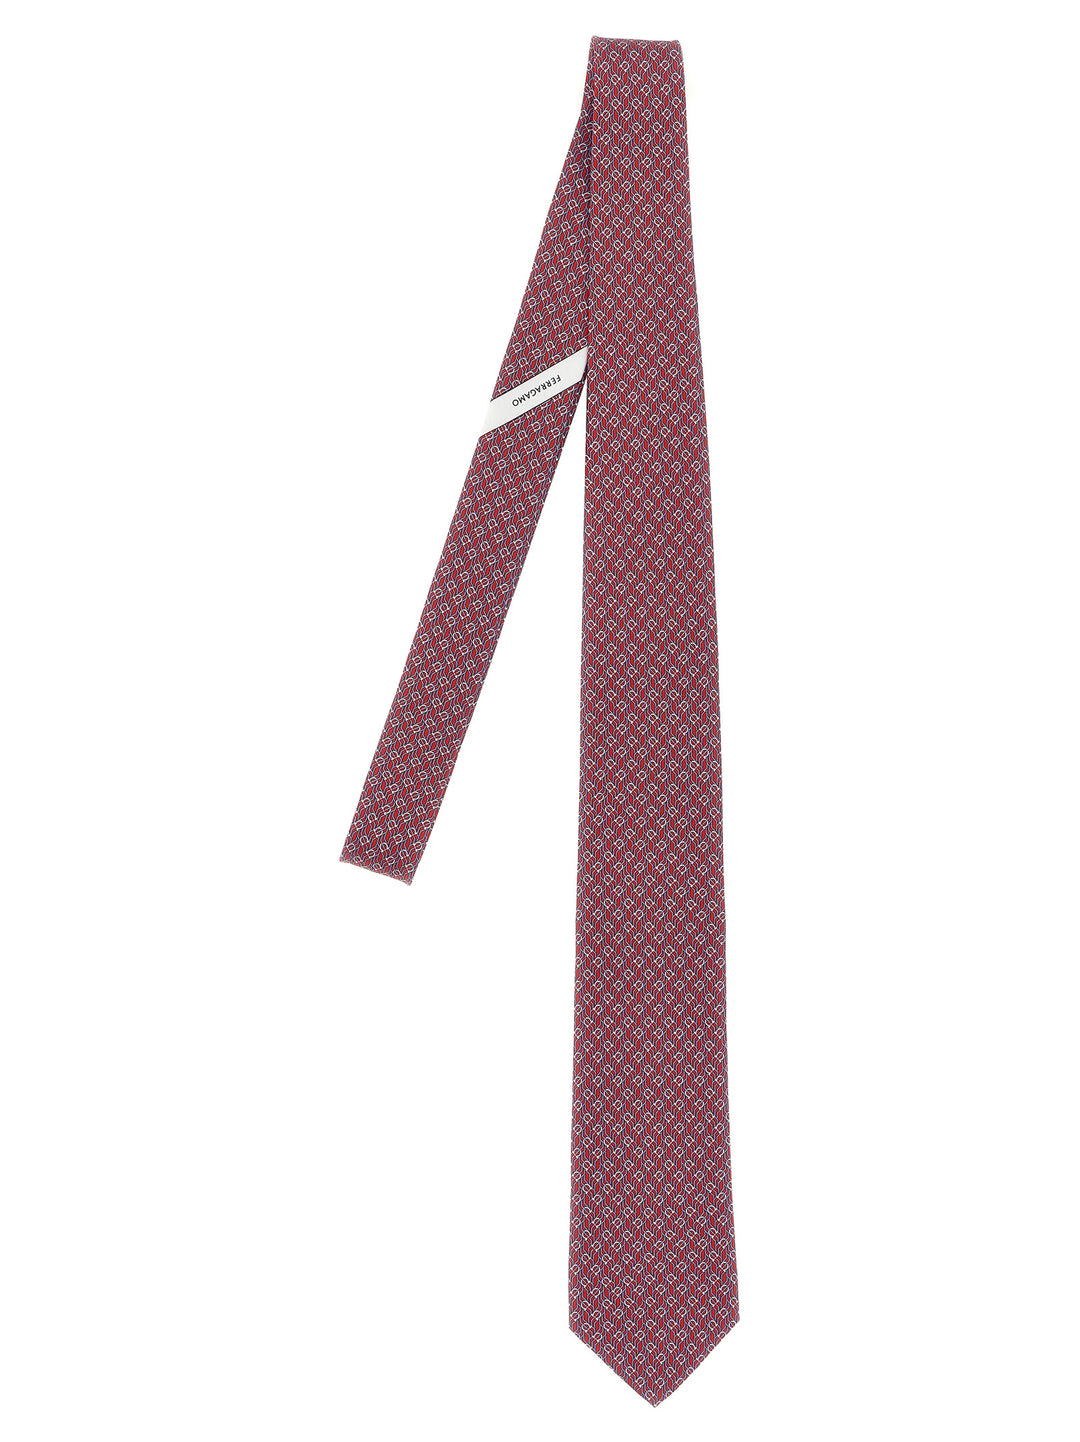 Tetris Cravatte Rosso